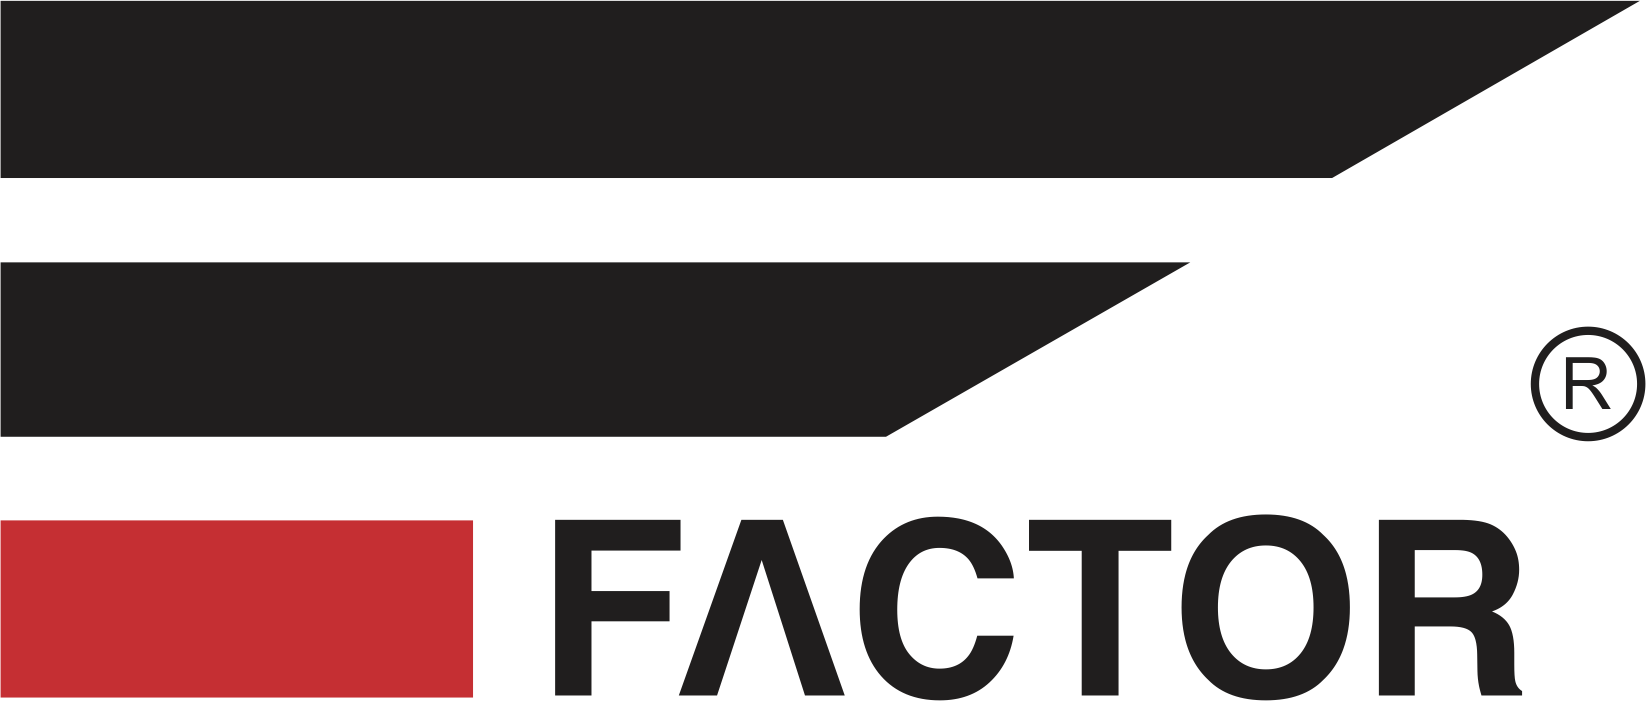 Factor Company logo